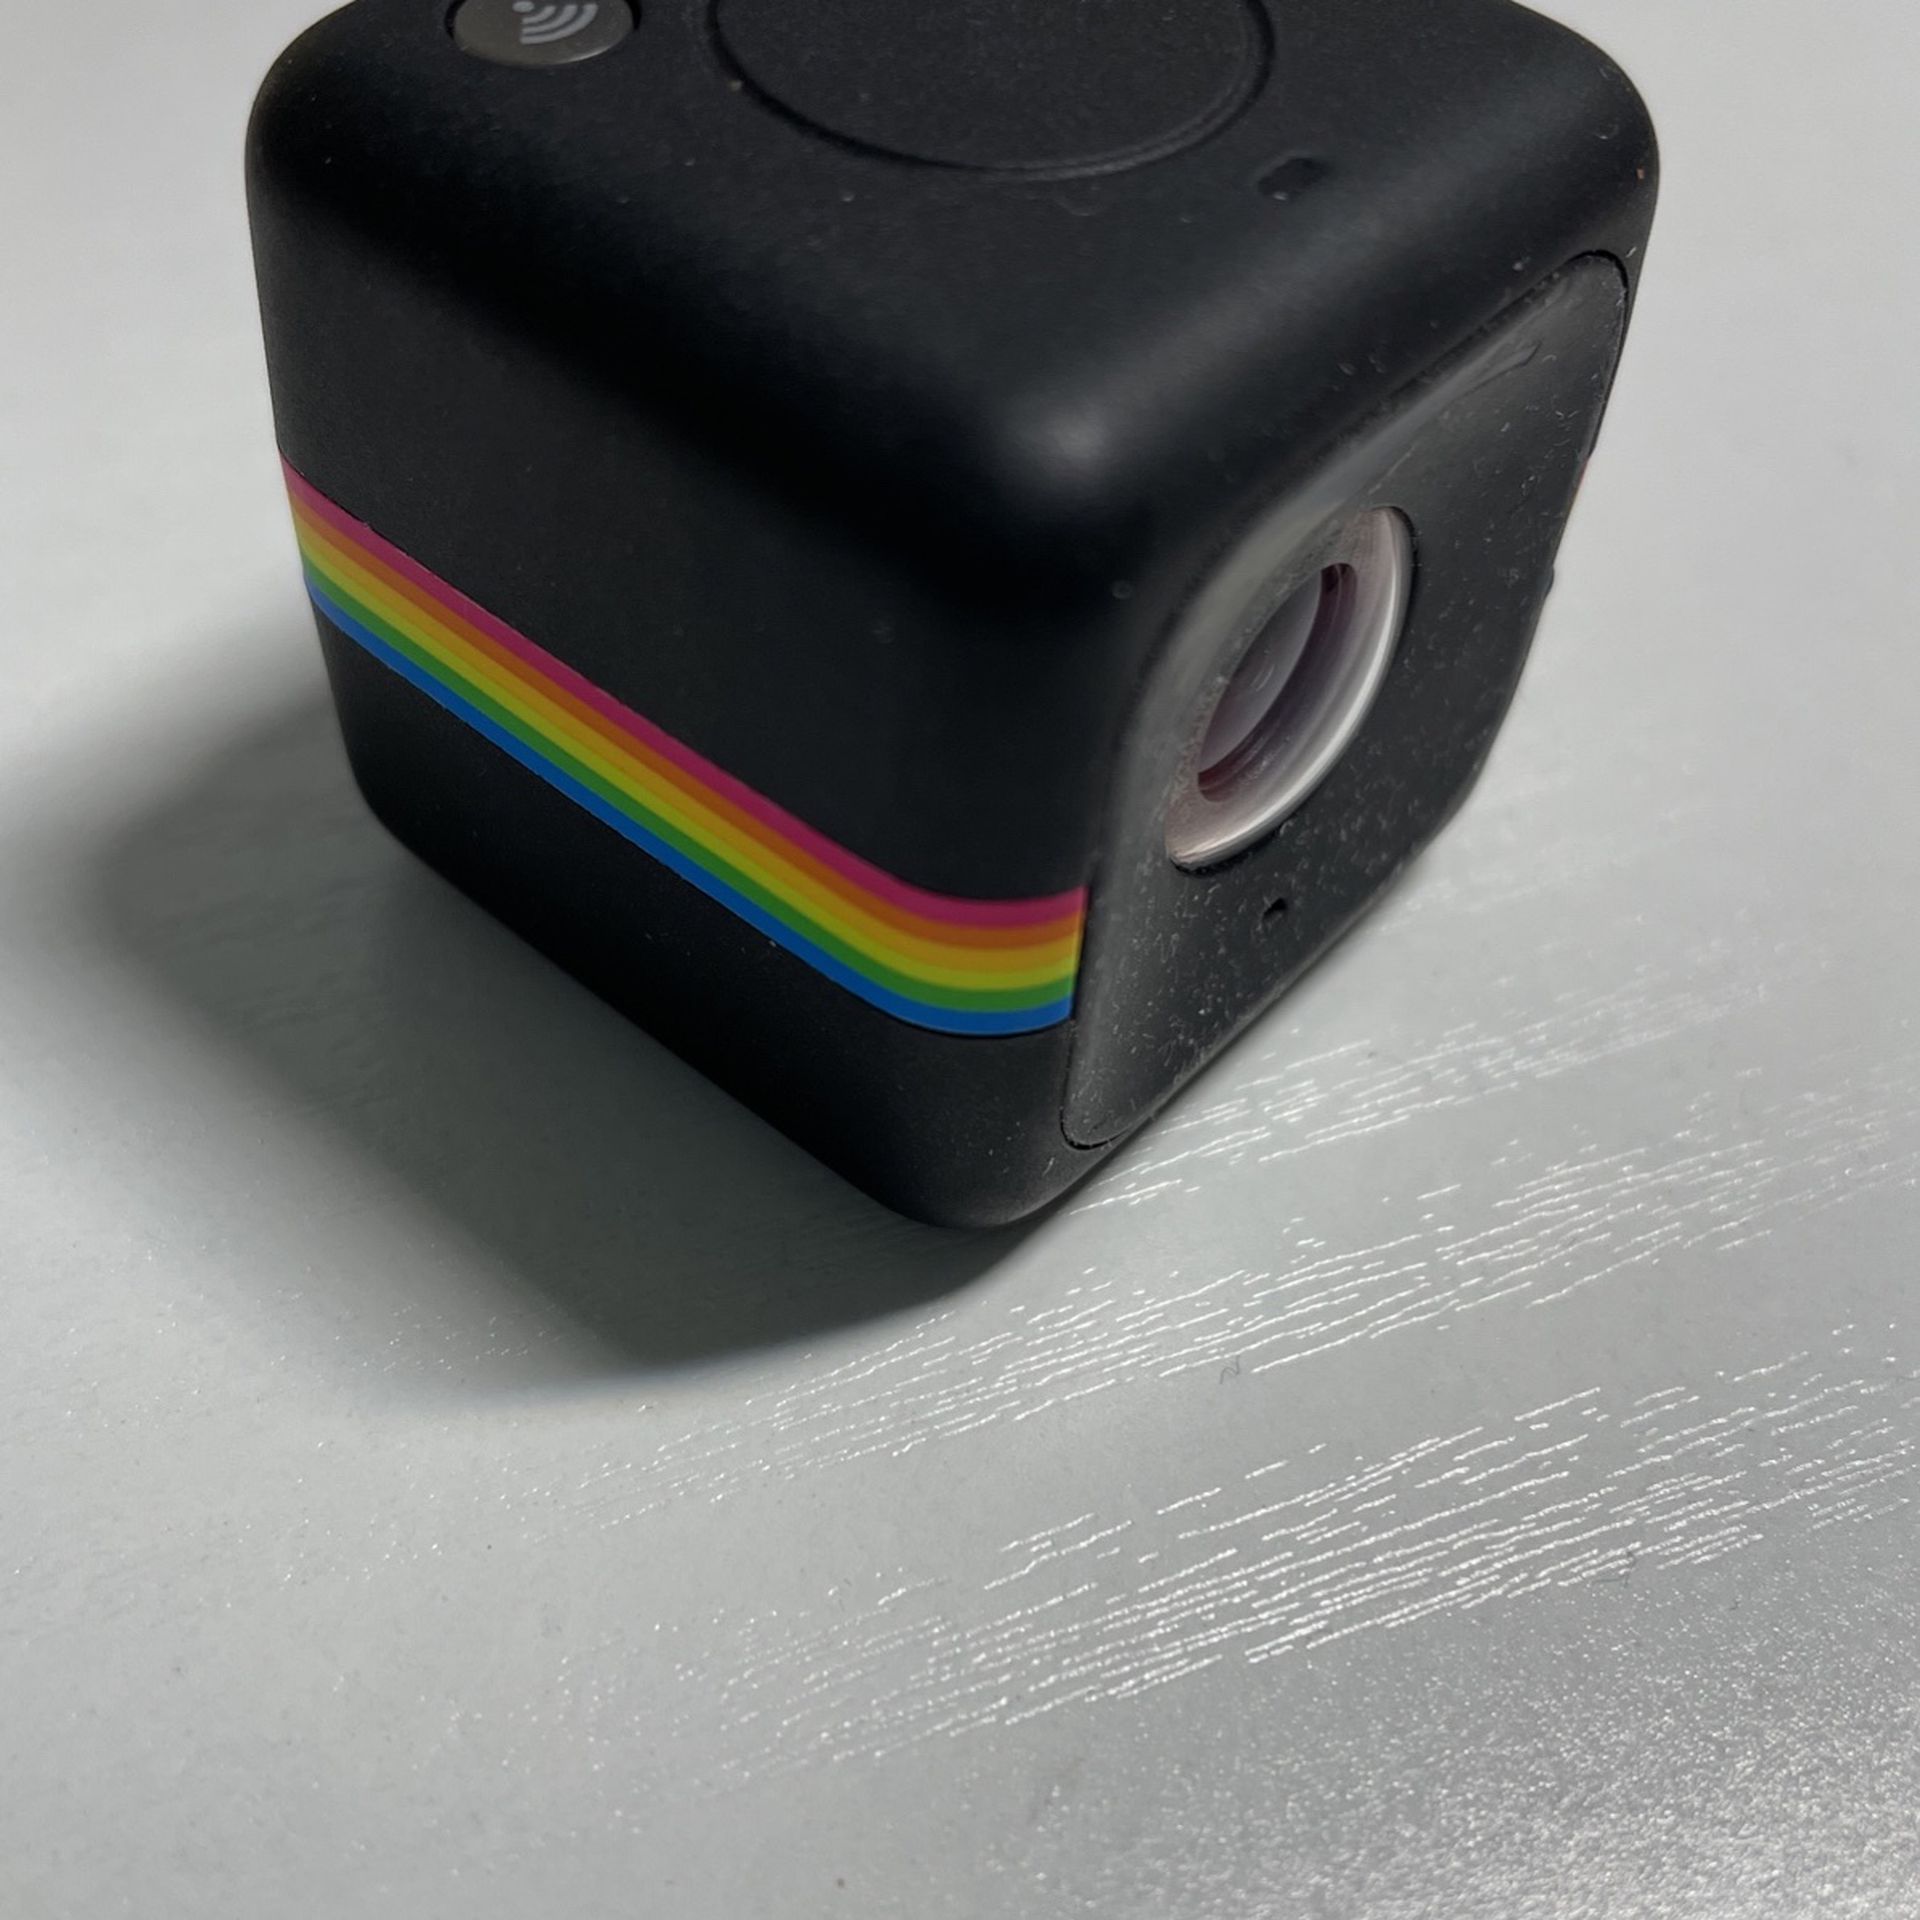 polaroid cube+ HD camera, waterproof- black